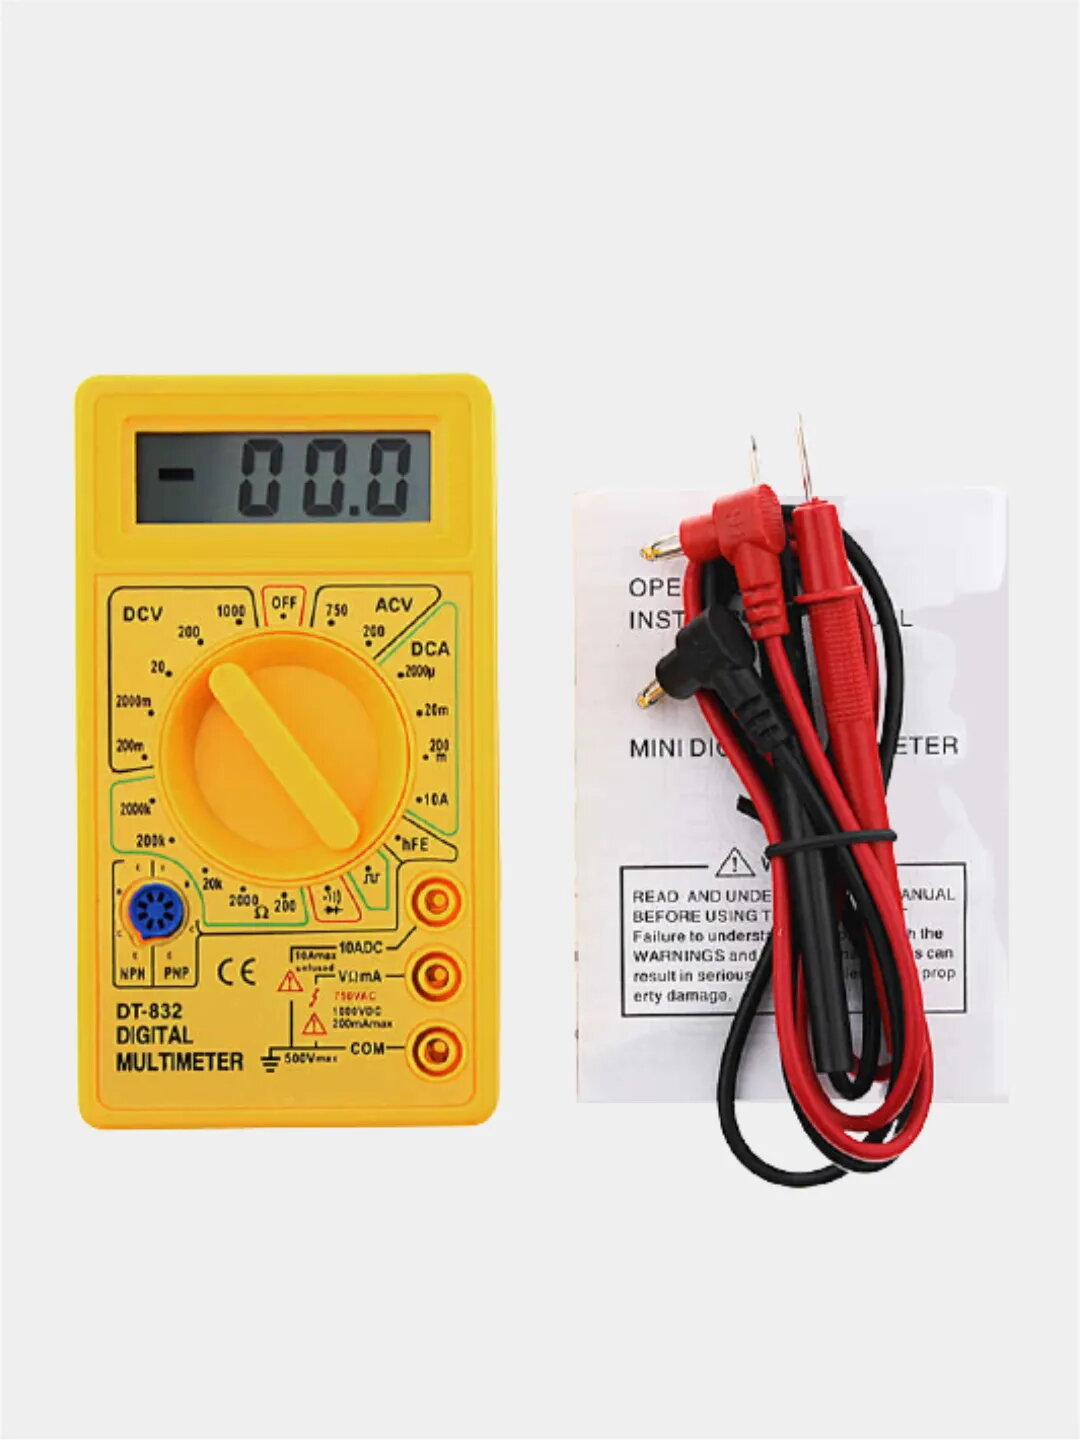 Мультиметр DT-832 с прозвонкой, инструкция по эксплуатации на русском языке, с батарейкой, желтый - фотография № 1